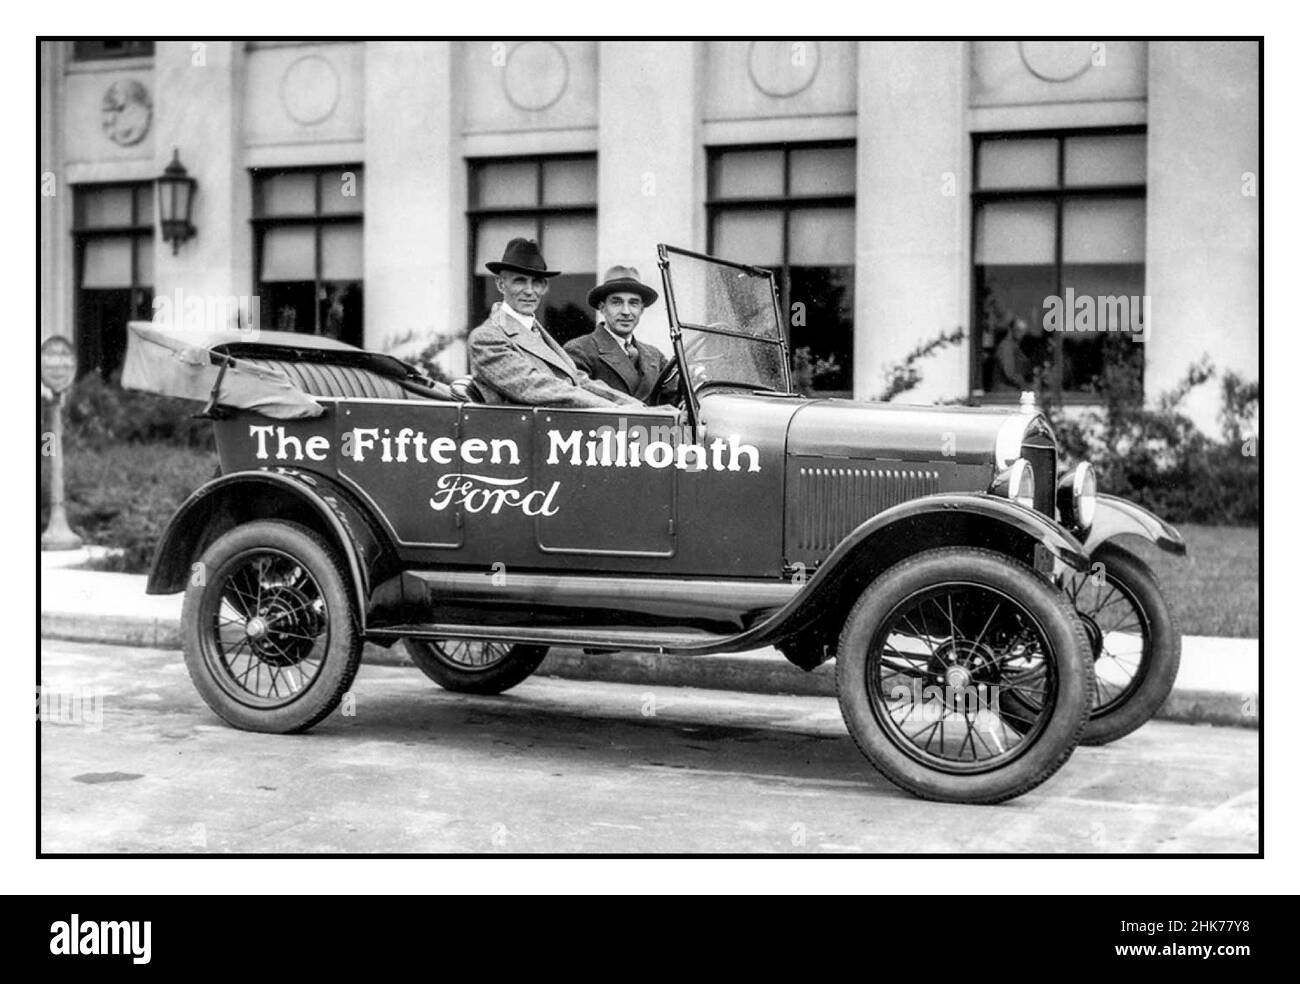 Henry Ford ed Edsel Ford in un motorcar modello T il quindicesimo milionesimo fatto da Ford 1928: Inventore visionario americano e industriale Henry Ford (1863 - 1947) e suo figlio, esecutivo automobilistico Edsel Ford (1893 - 1943), siedono in 'il quindicesimo milionth Ford '. Foto Stock